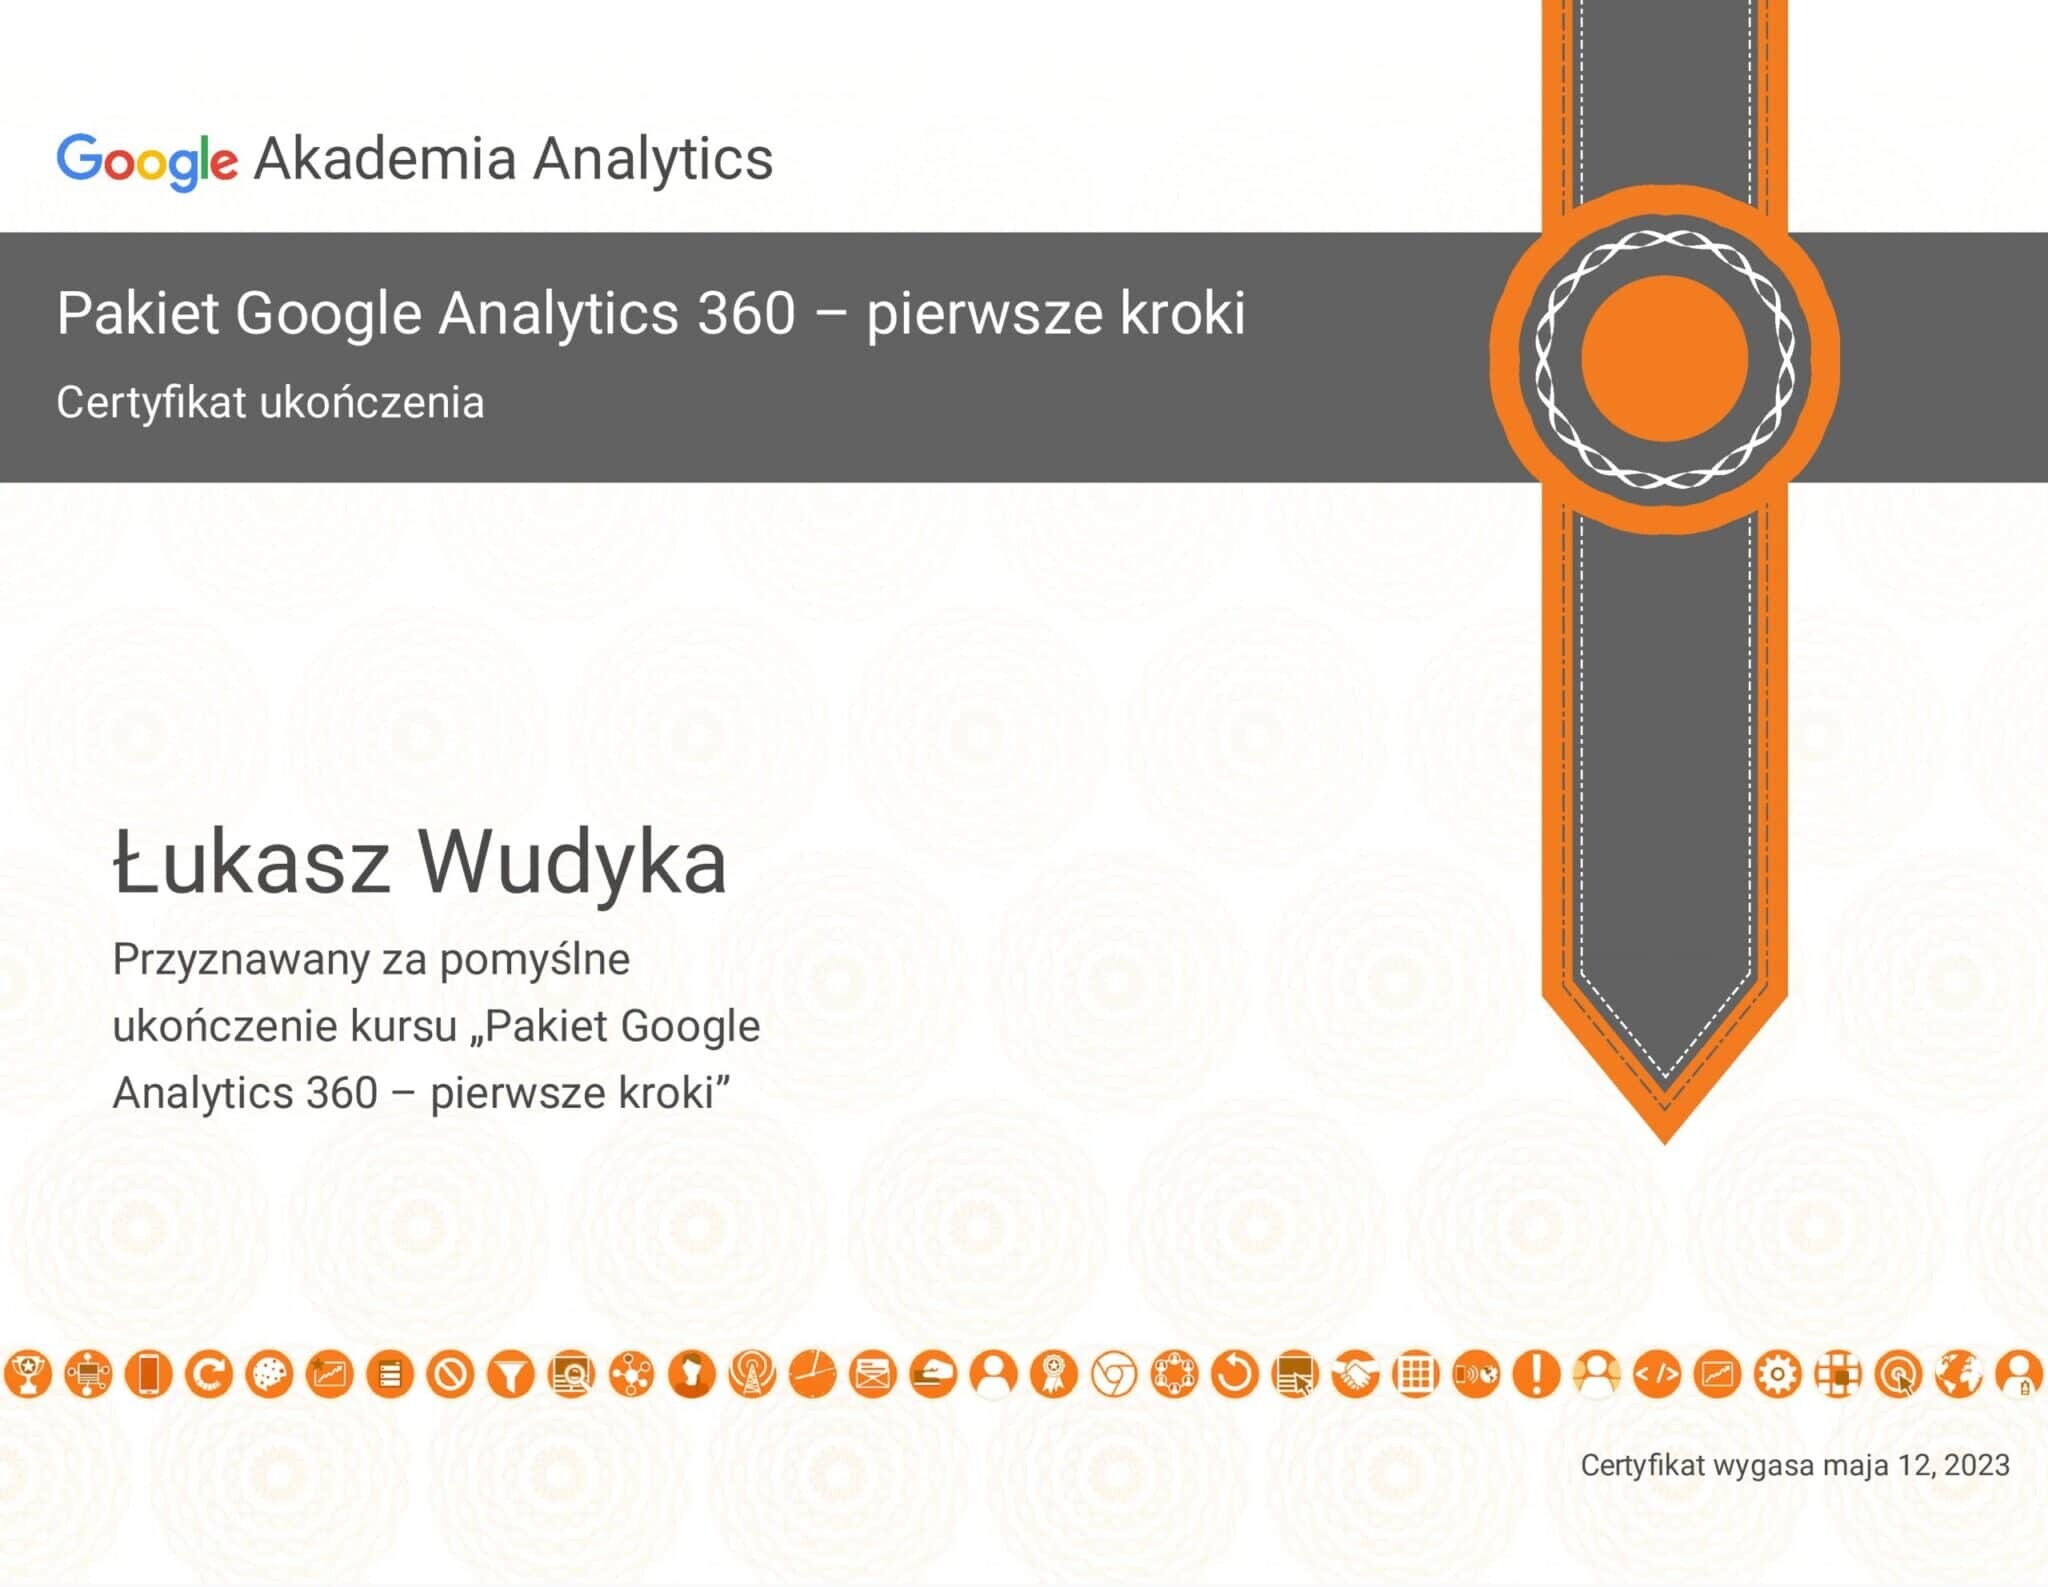 Łukasz Wudyka certyfikat Google Analytics 360 Pierwsze kroki - Akademia Analytics